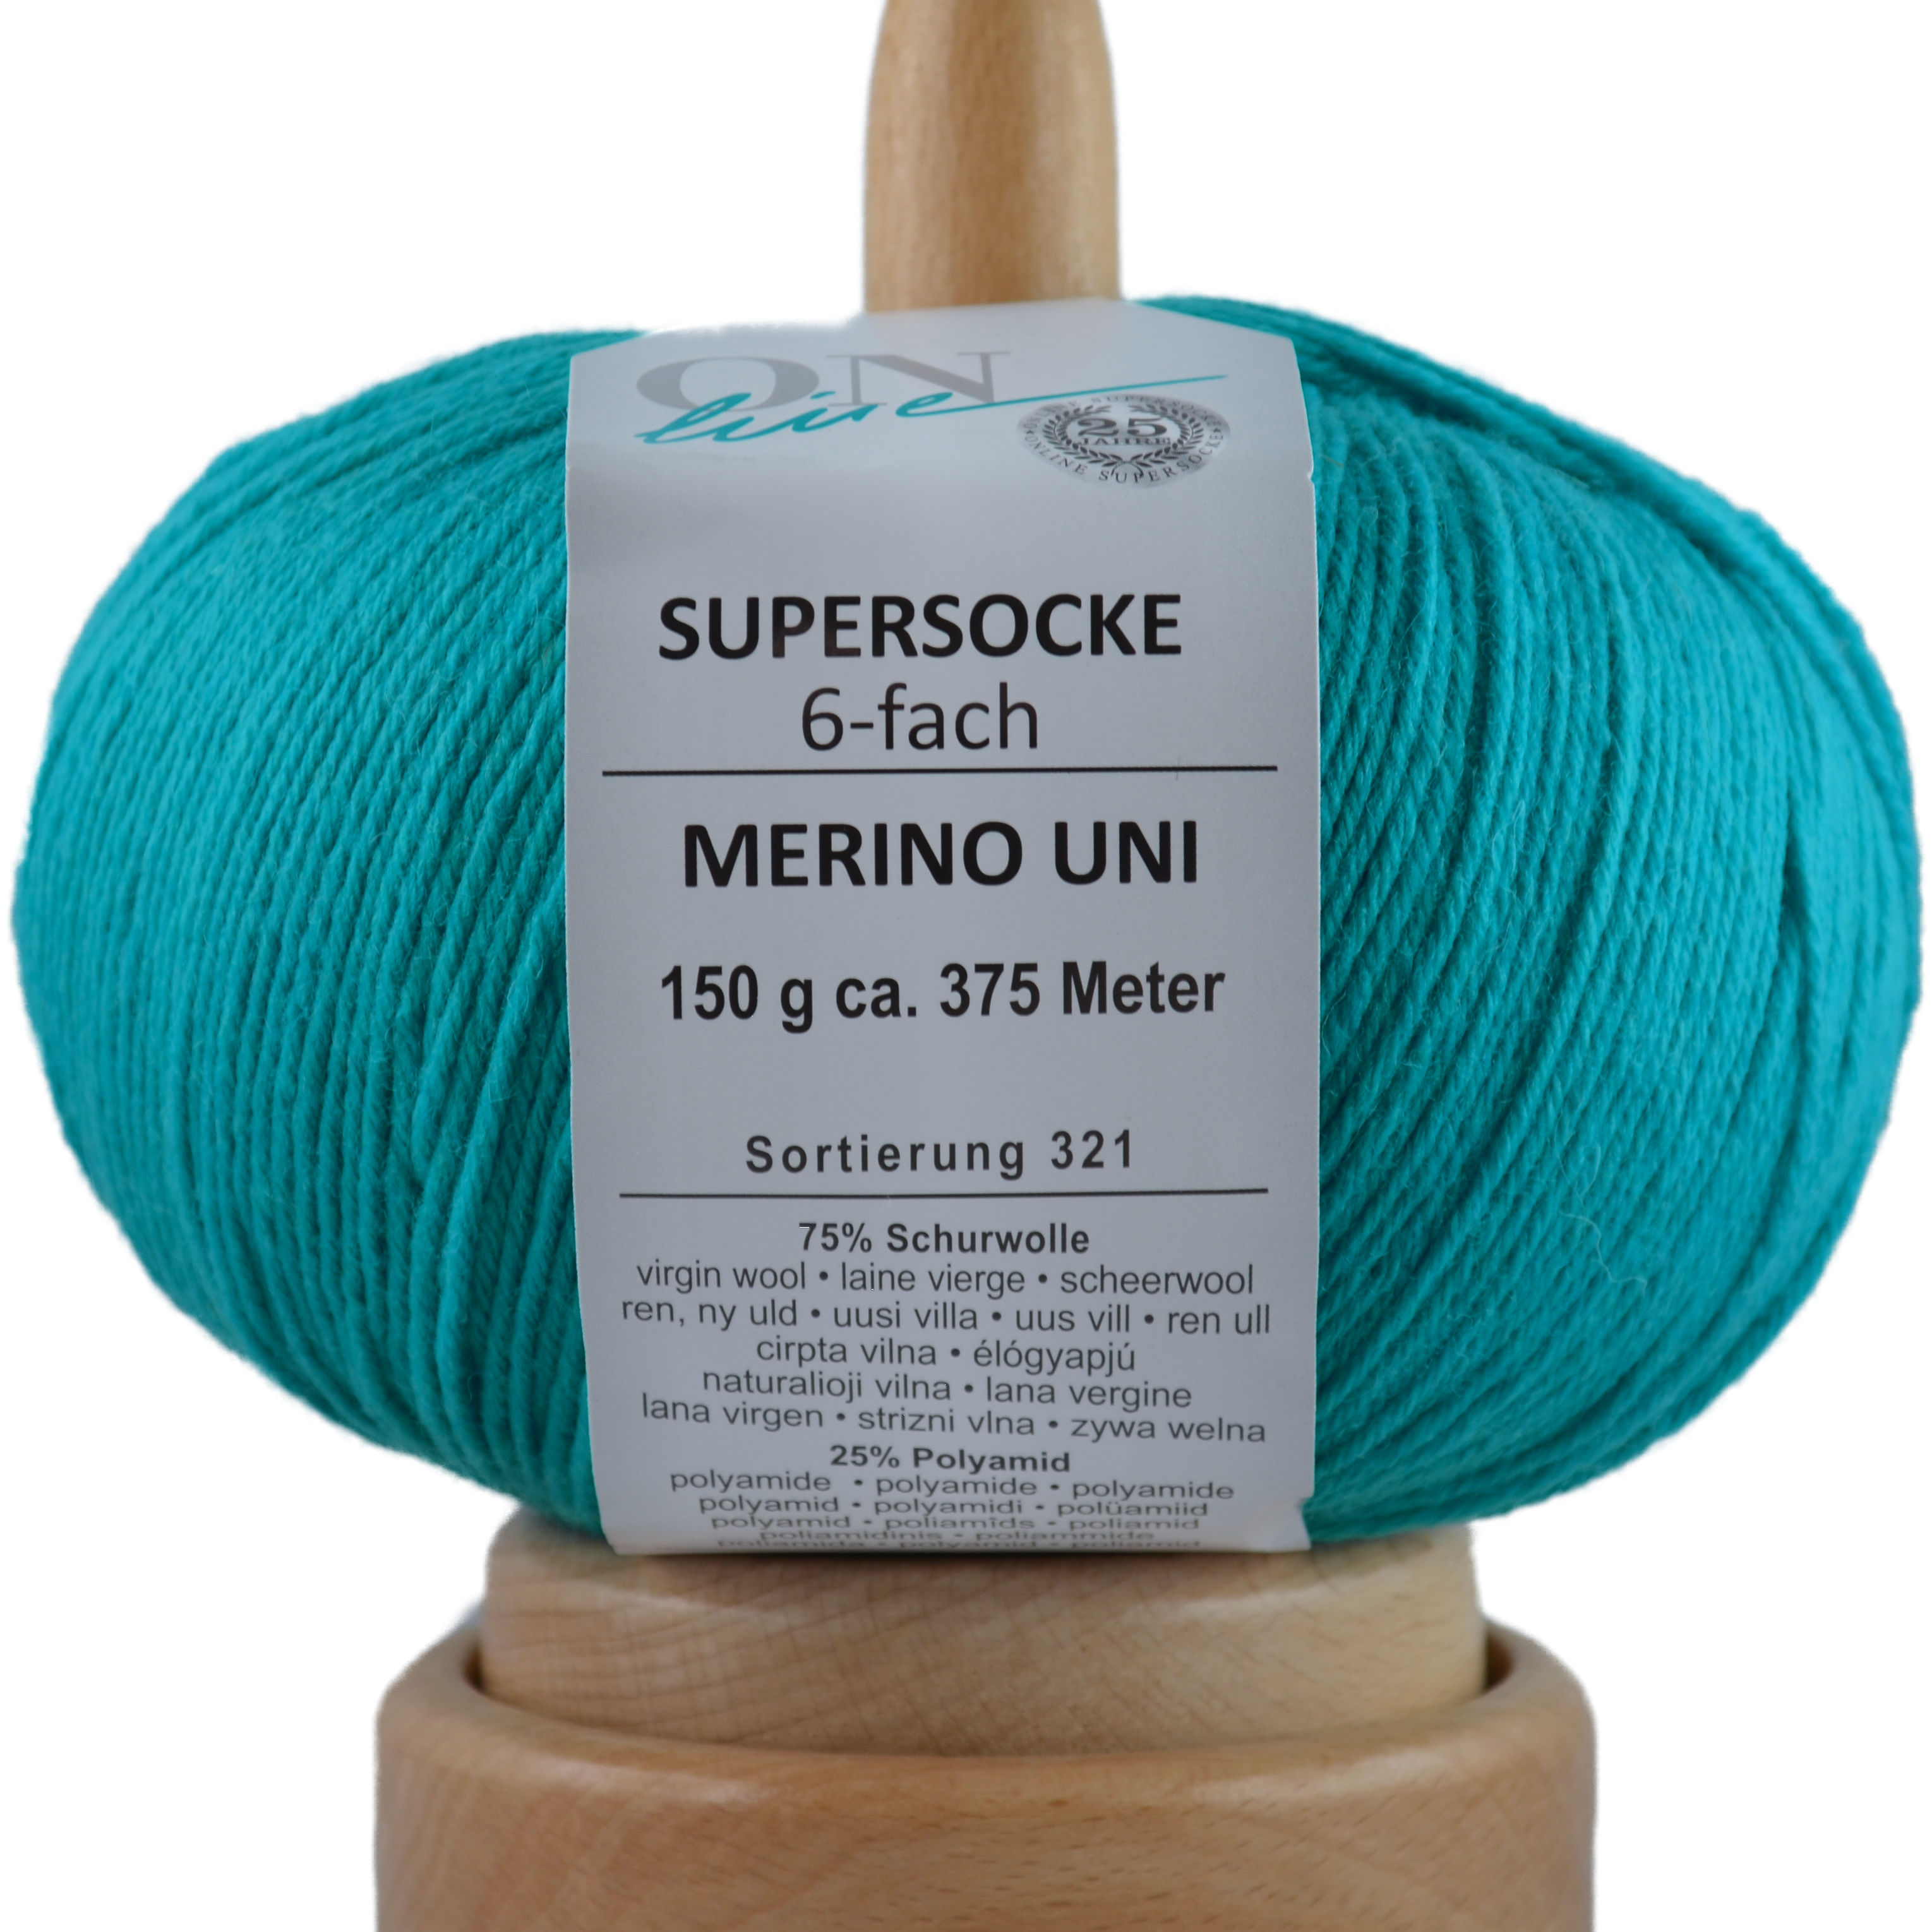 Supersocke 6-fach Merino Uni von ONline Sort. 321 - 5004 - türkis